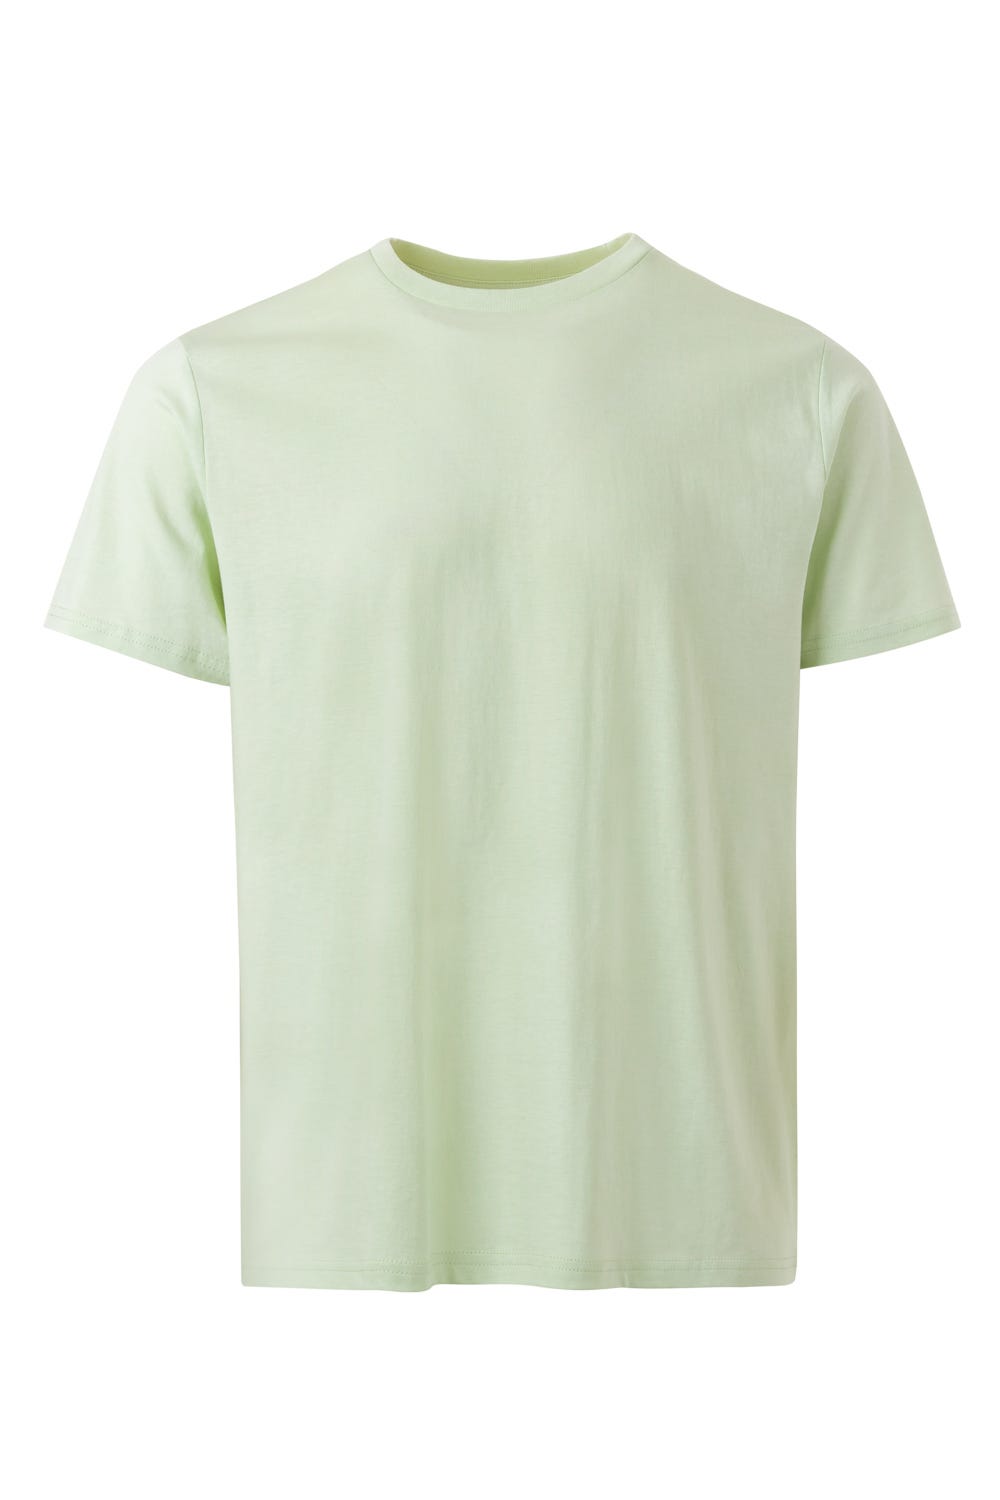 Mukua Tsn160uc Camiseta Manga Corta Natura Soft Green